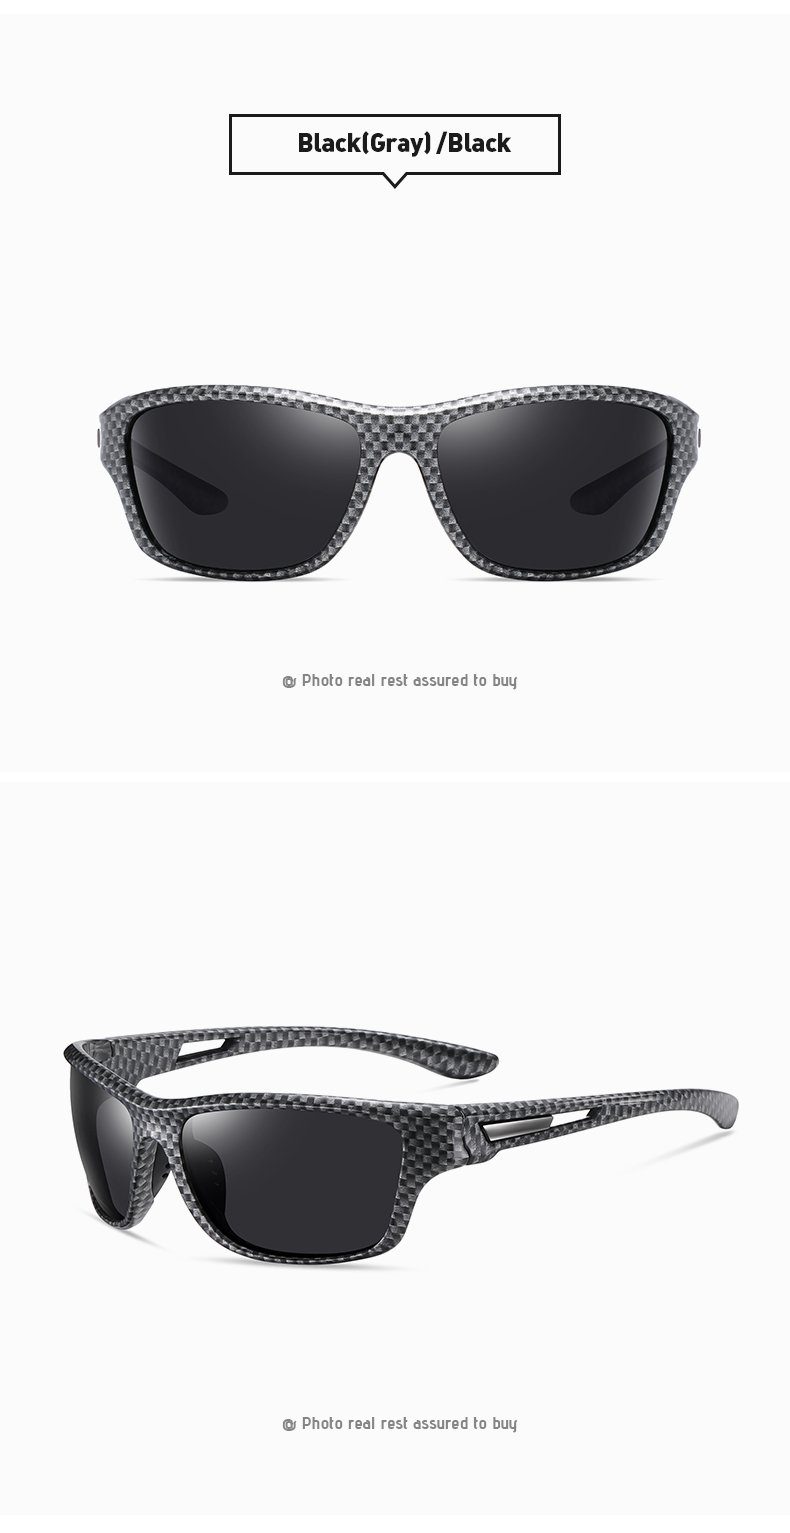 Herren PACIEA PACIEA schwarz-weiß Damen Fahrradbrille Unisex polarisiert Fahrradbrille Sportbrille